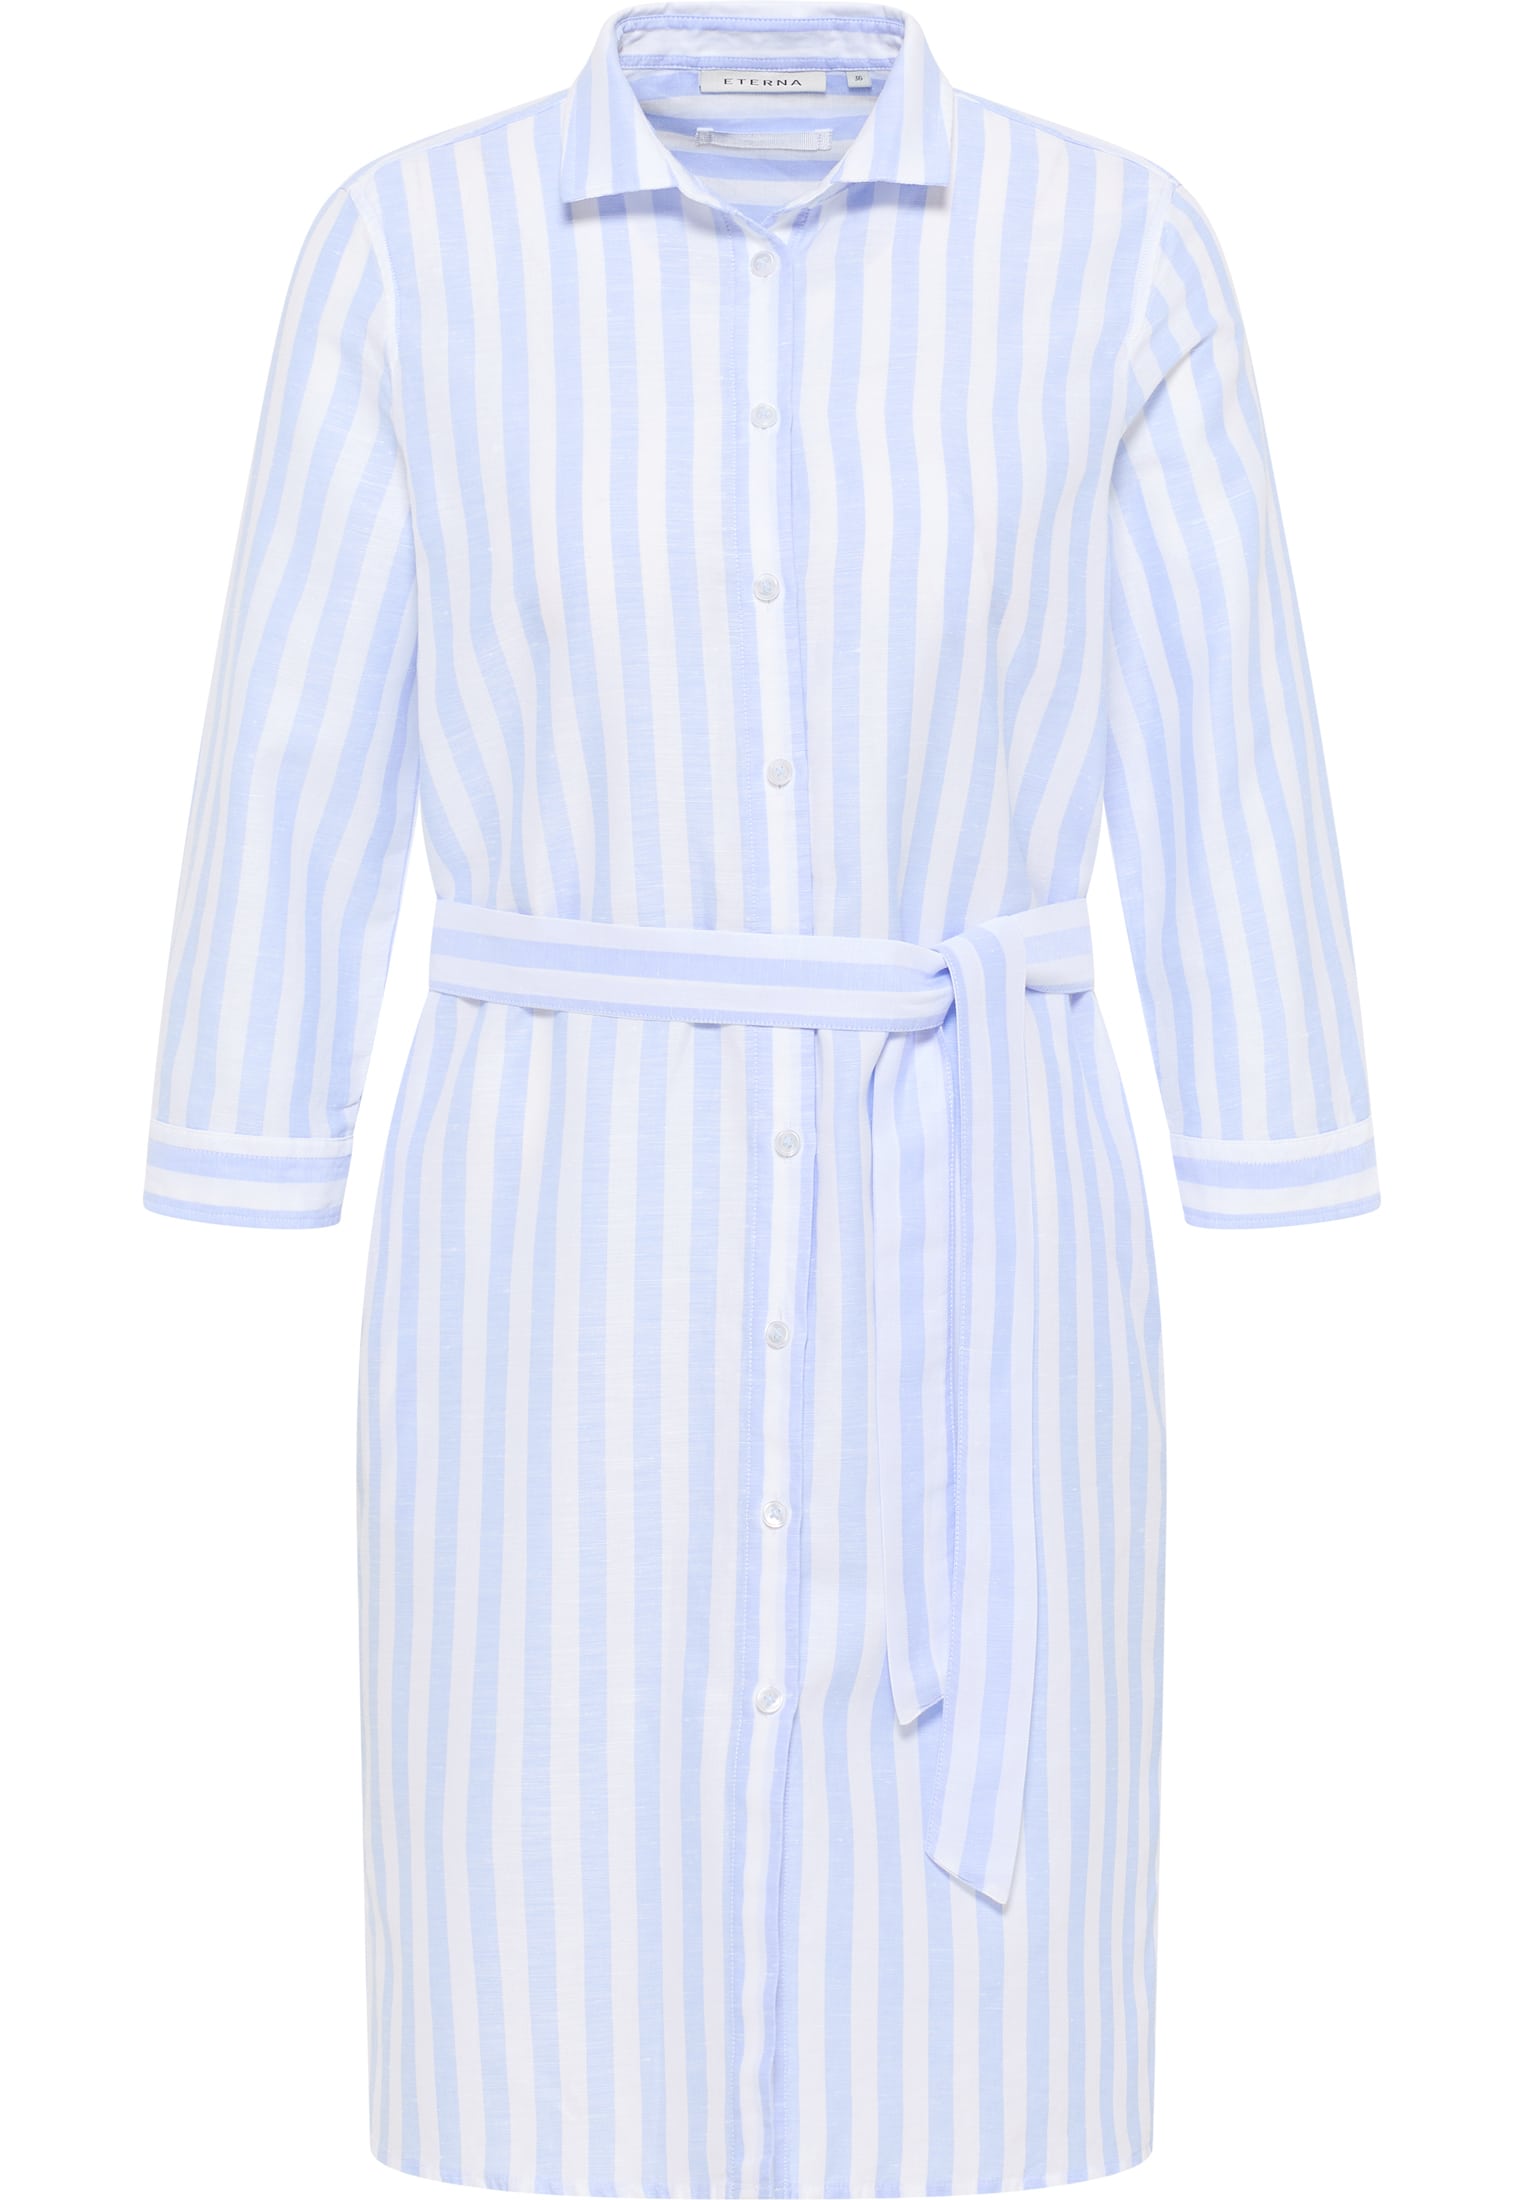 Hemdblusenkleid in blue | blue sleeves | | striped 46 3/4 2DR00267-01-11-46-3/4 light | light